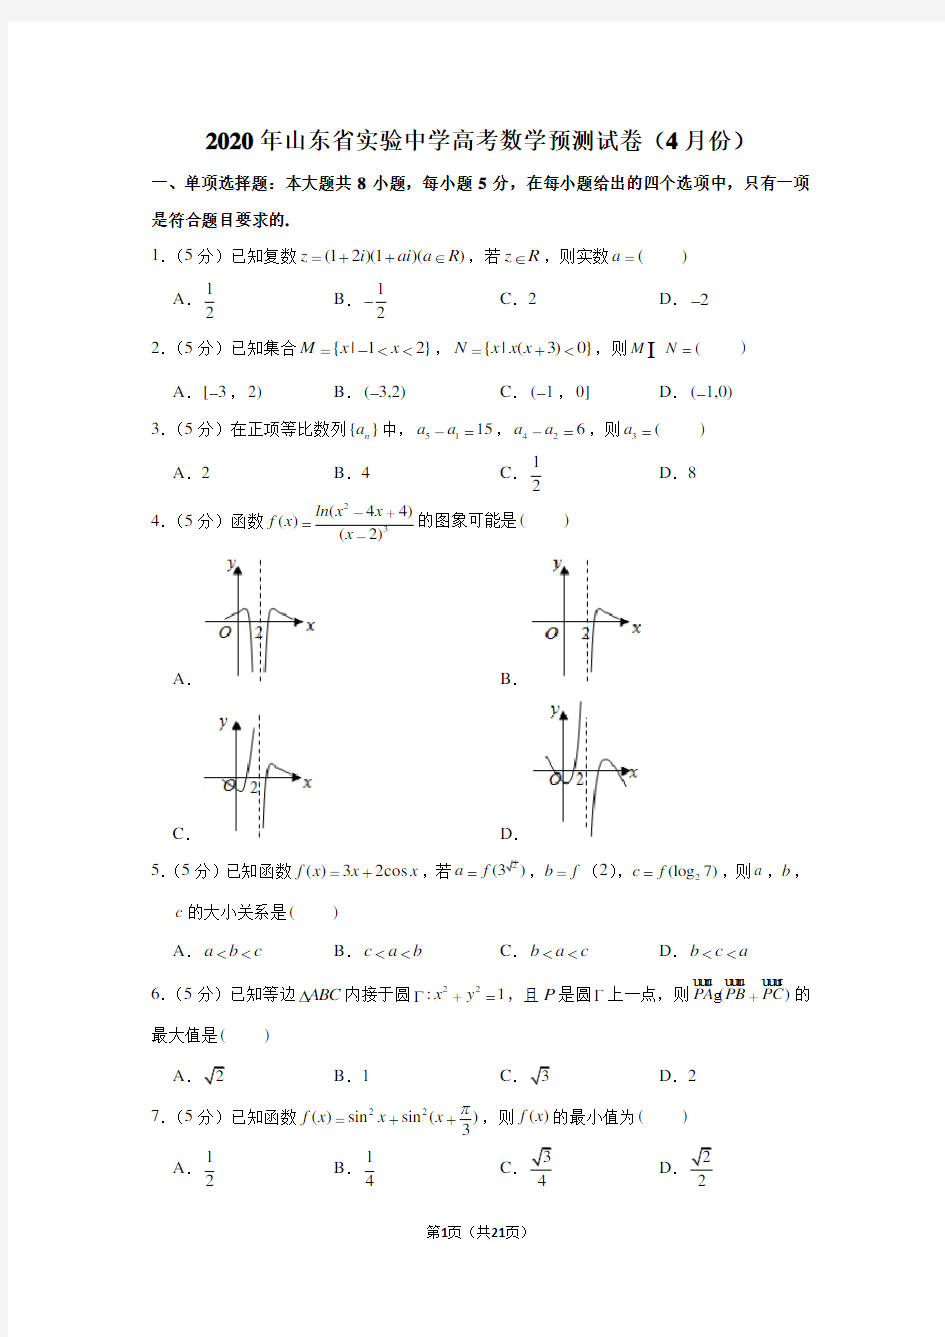 2020年山东省实验中学高考数学预测试卷(4月份)